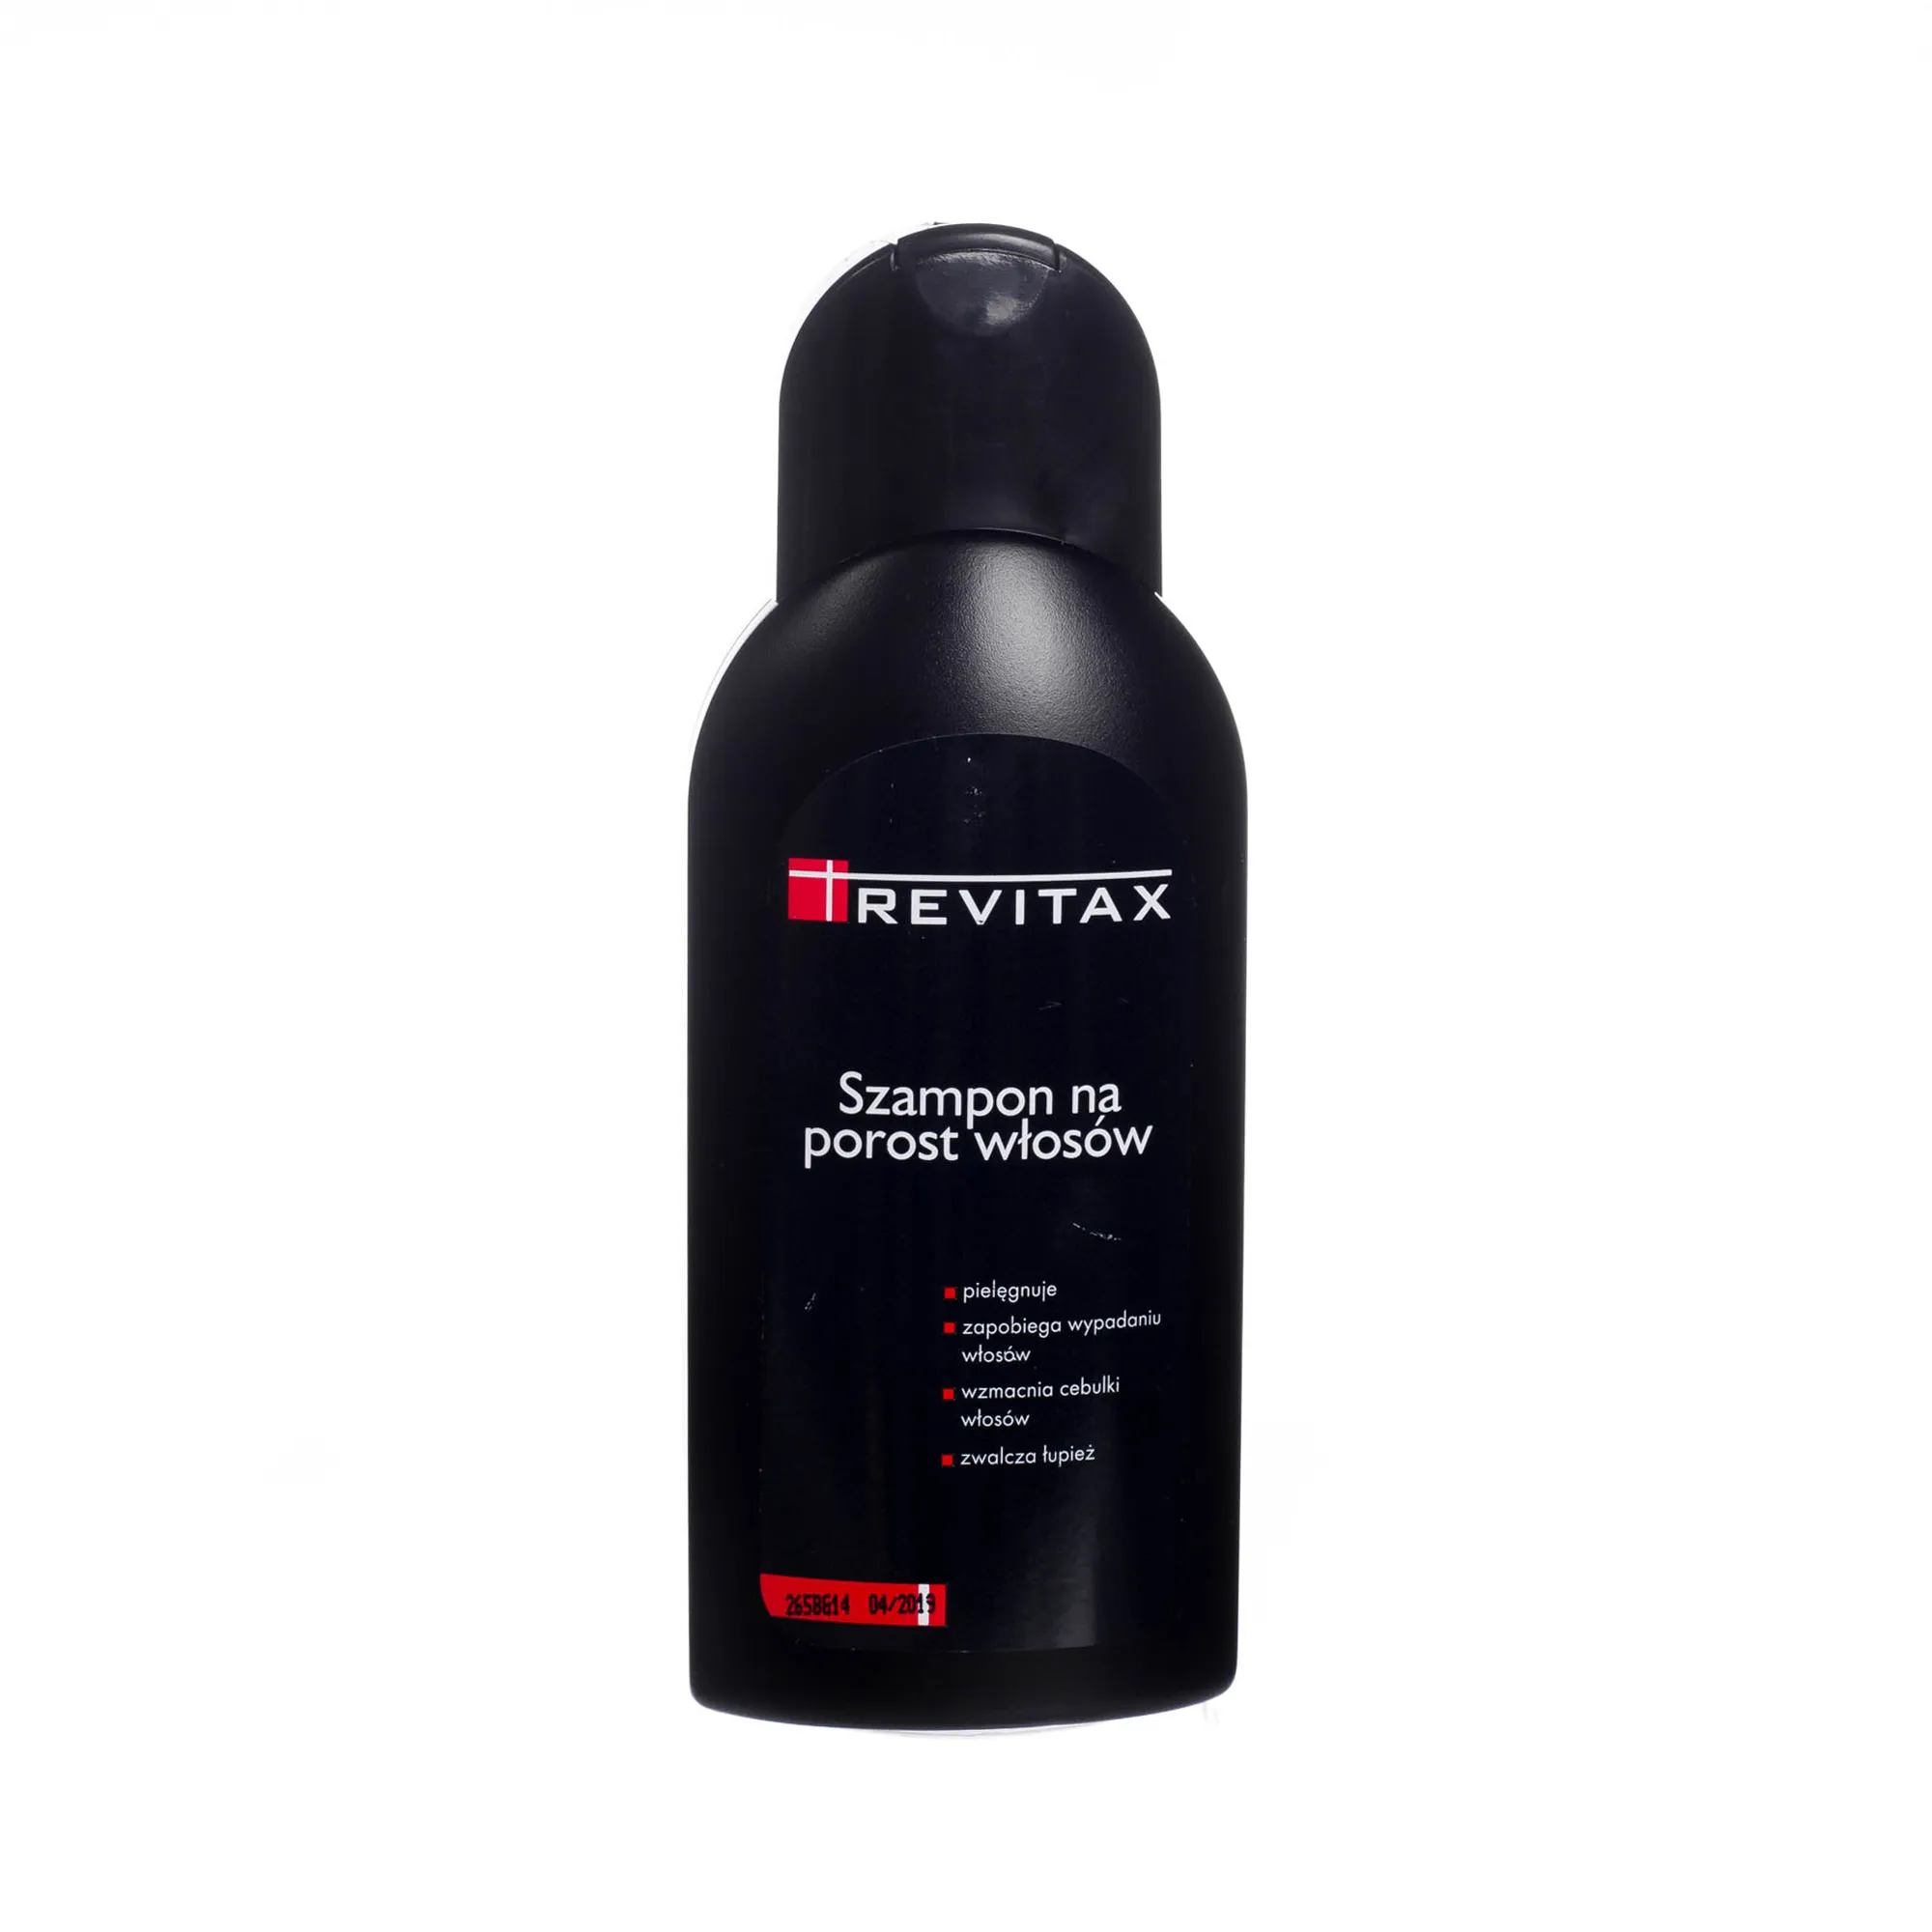 revitax szampon skład